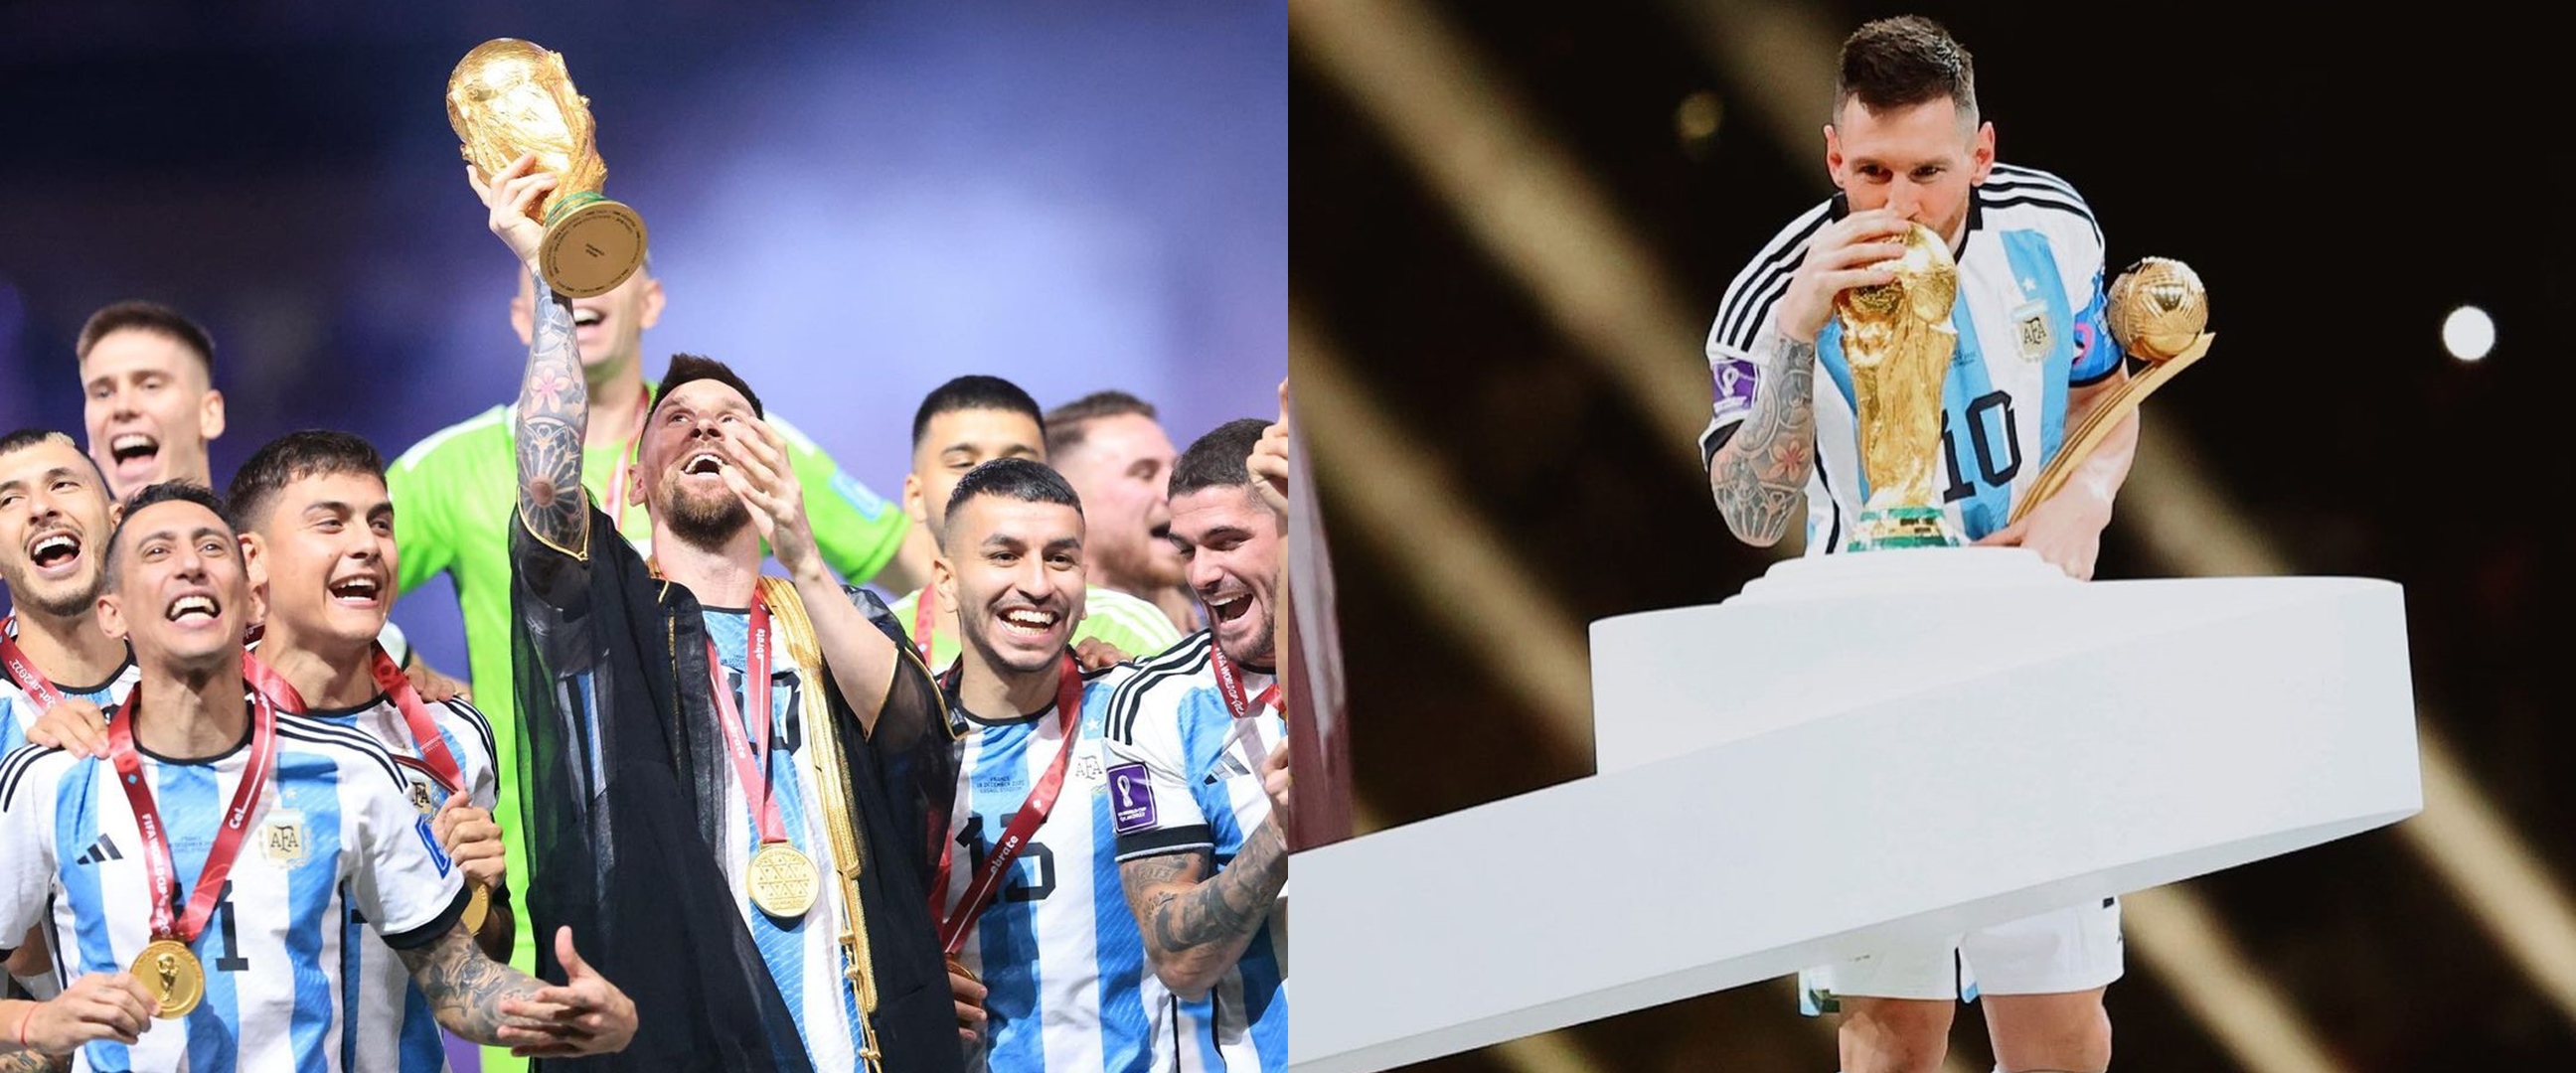 Lagi-lagi Messi pecahkan rekor, potretnya di Instagram jadi unggahan terbanyak disukai sepanjang masa